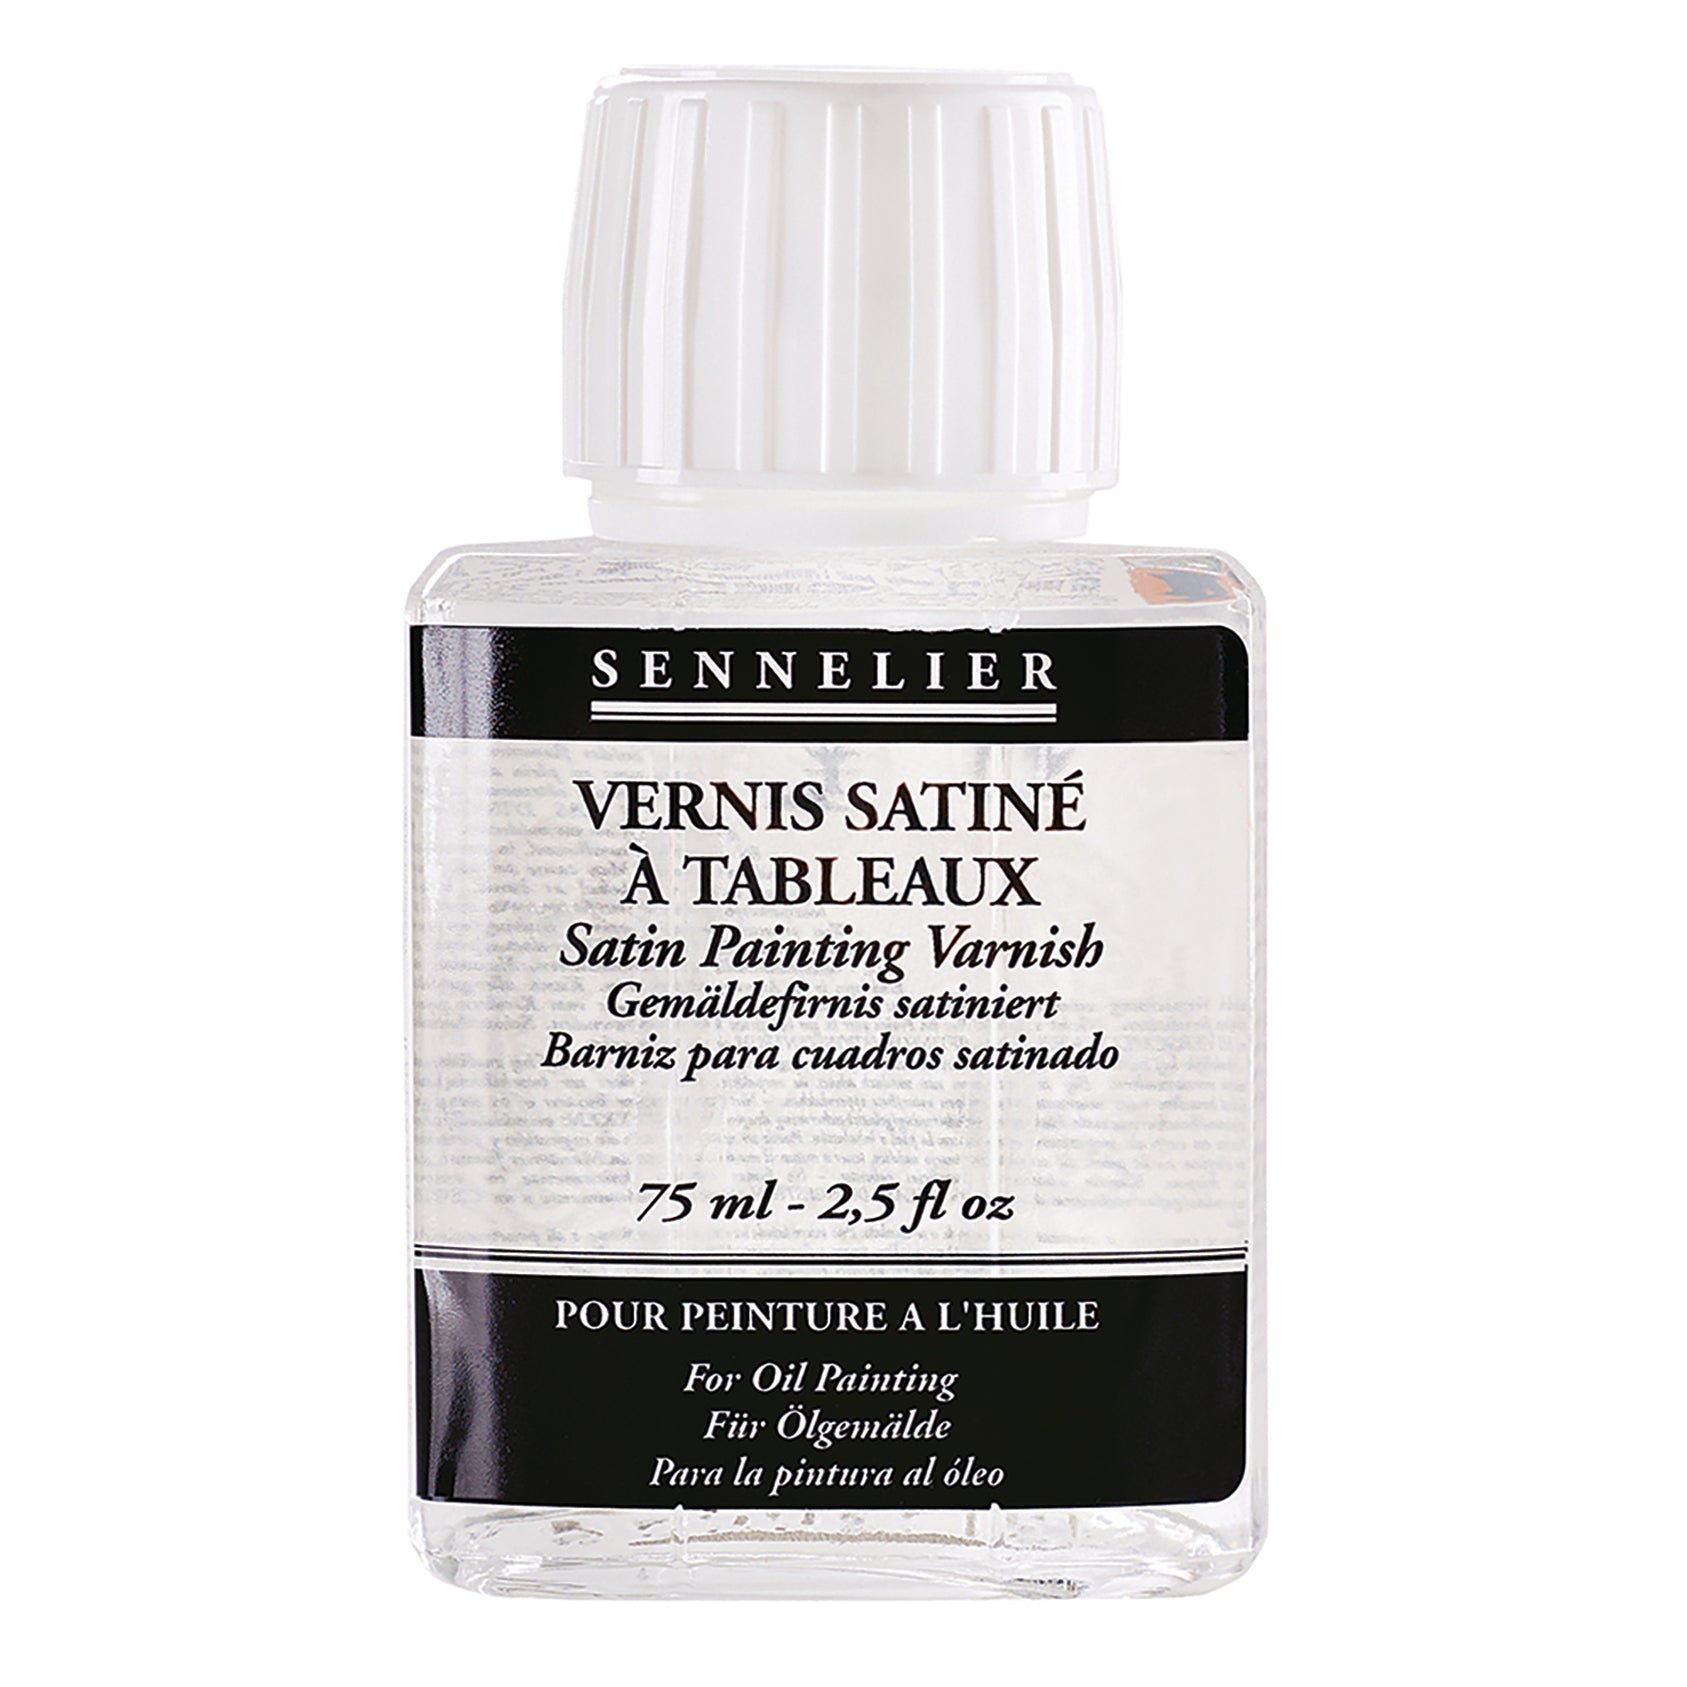 Sennelier Satin Varnish - Melbourne Etching Supplies